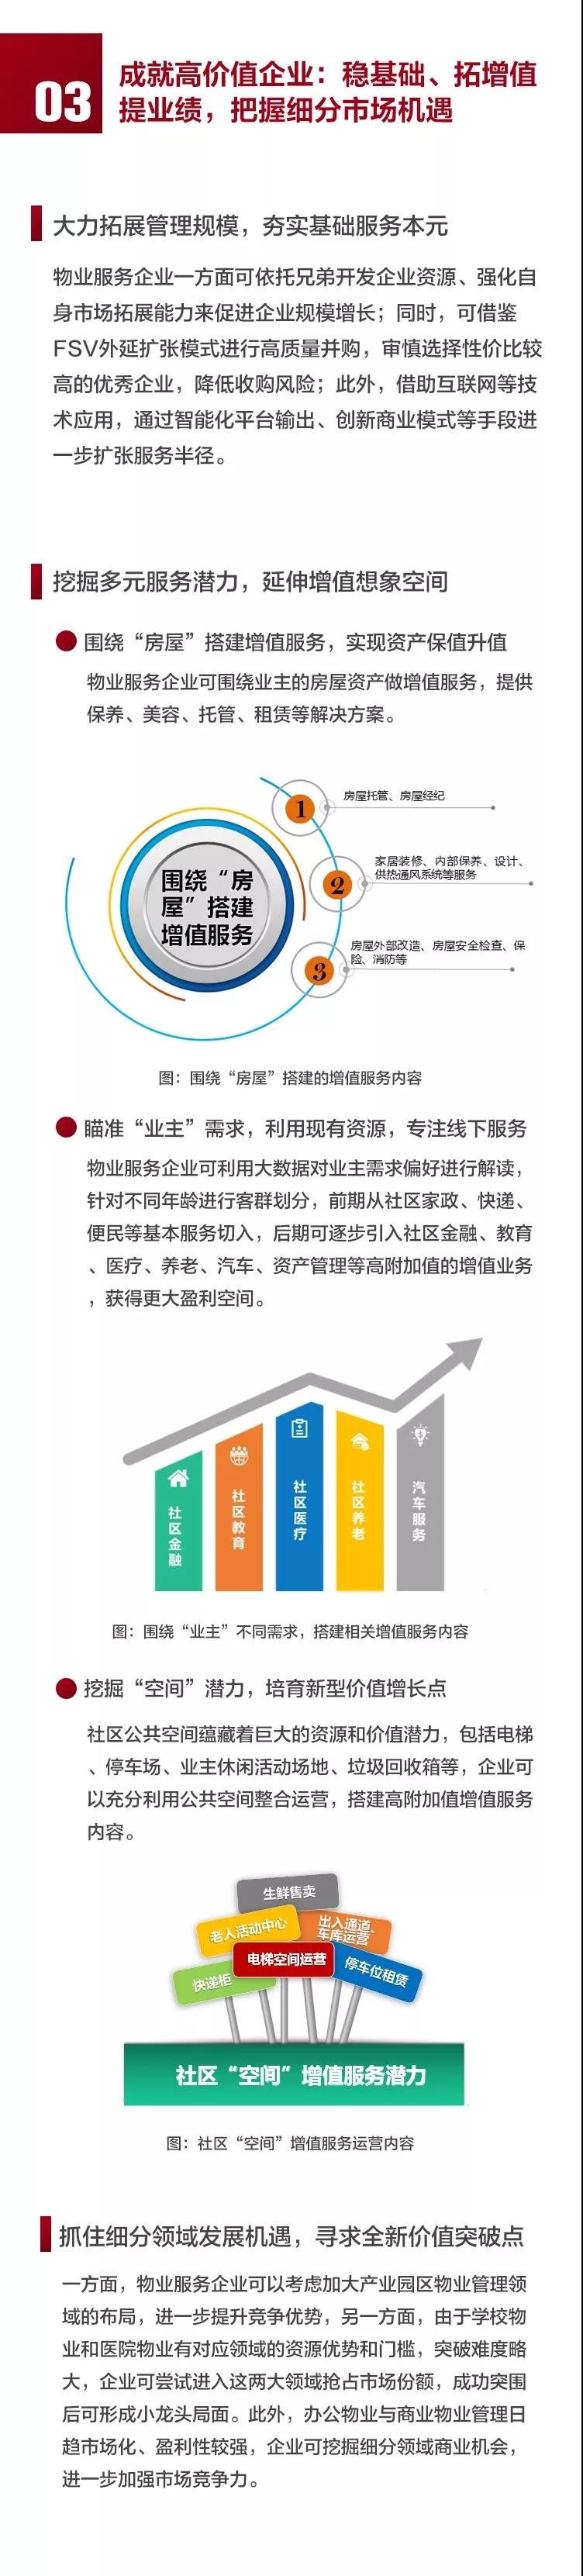 2019中国物业服务百强企业排行榜重磅发布 看看你家物业上榜没?